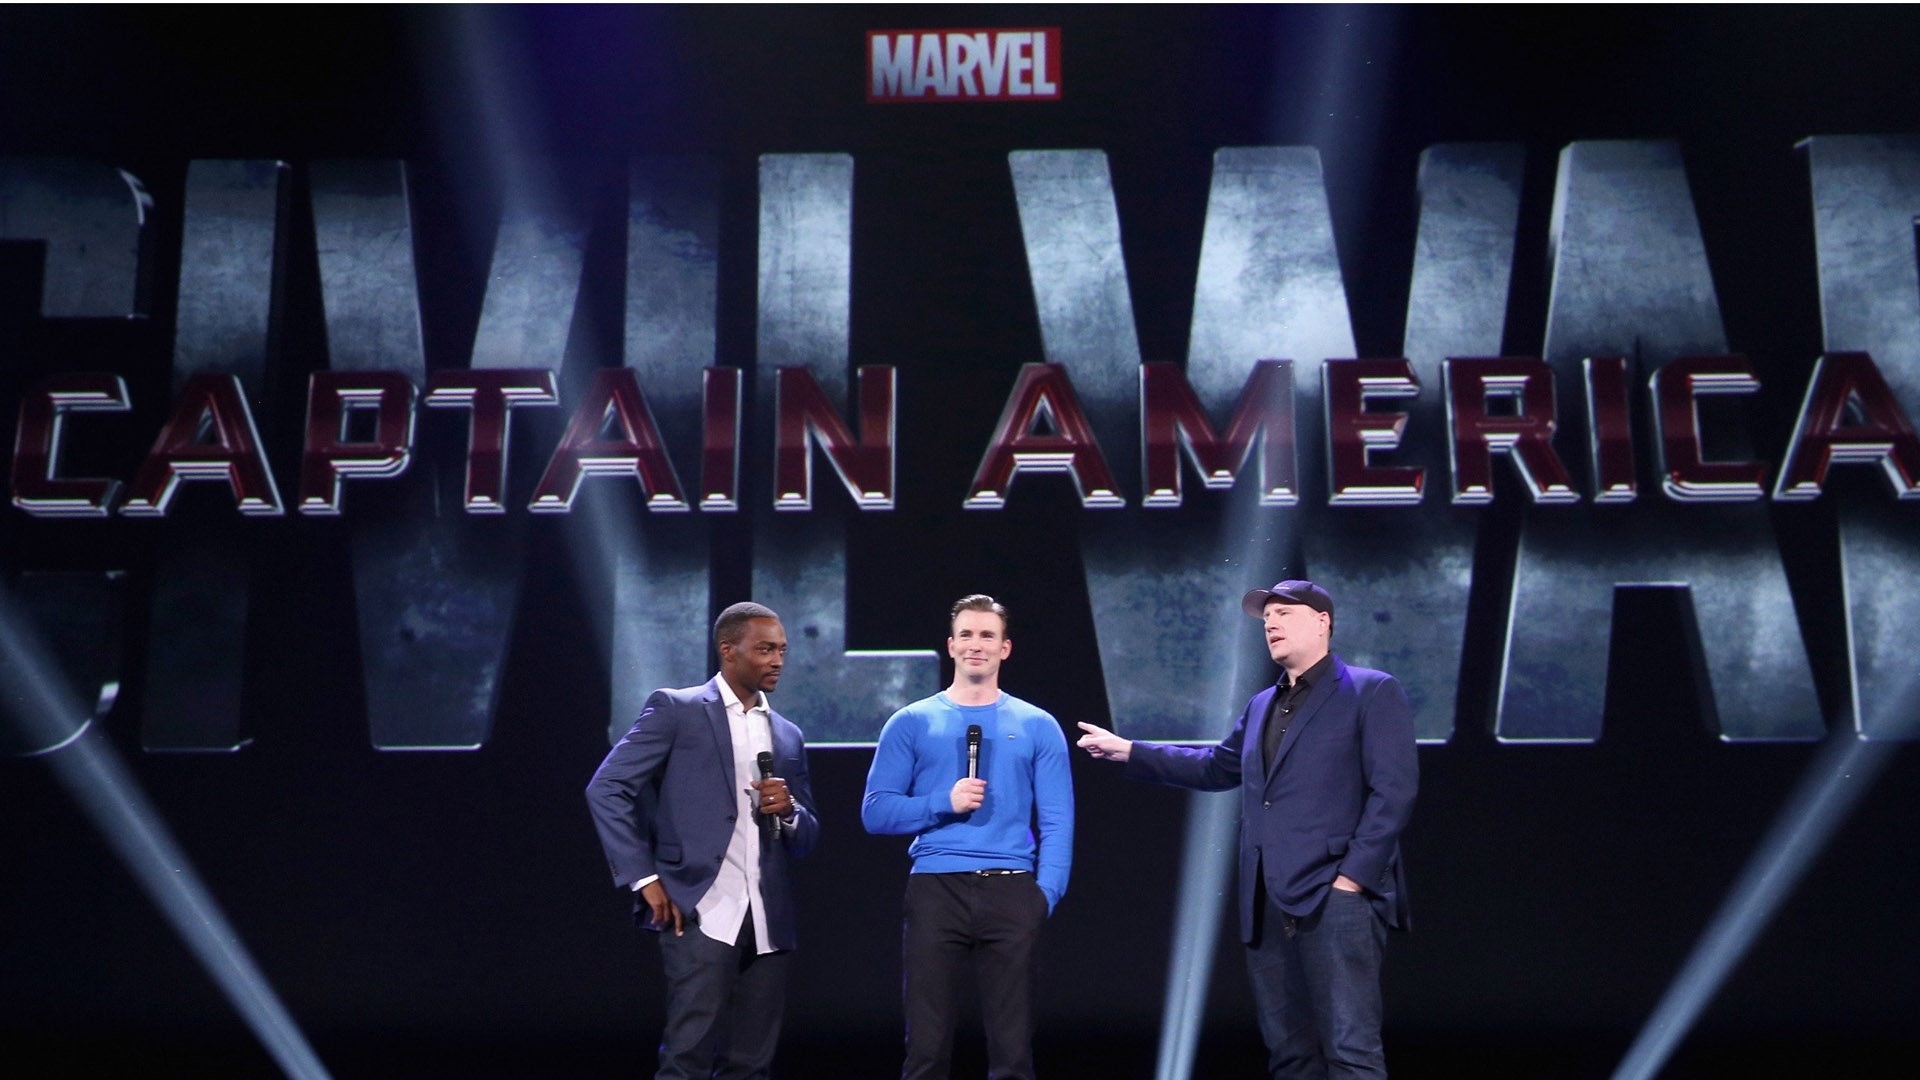 El filme que se estrenará en marzo de 2016 anuncia una pelea entre Iron Man y Capitán América que intenta proteger a su antiguo amigo el "Soldado del Invierno" que es perseguido por el gobierno